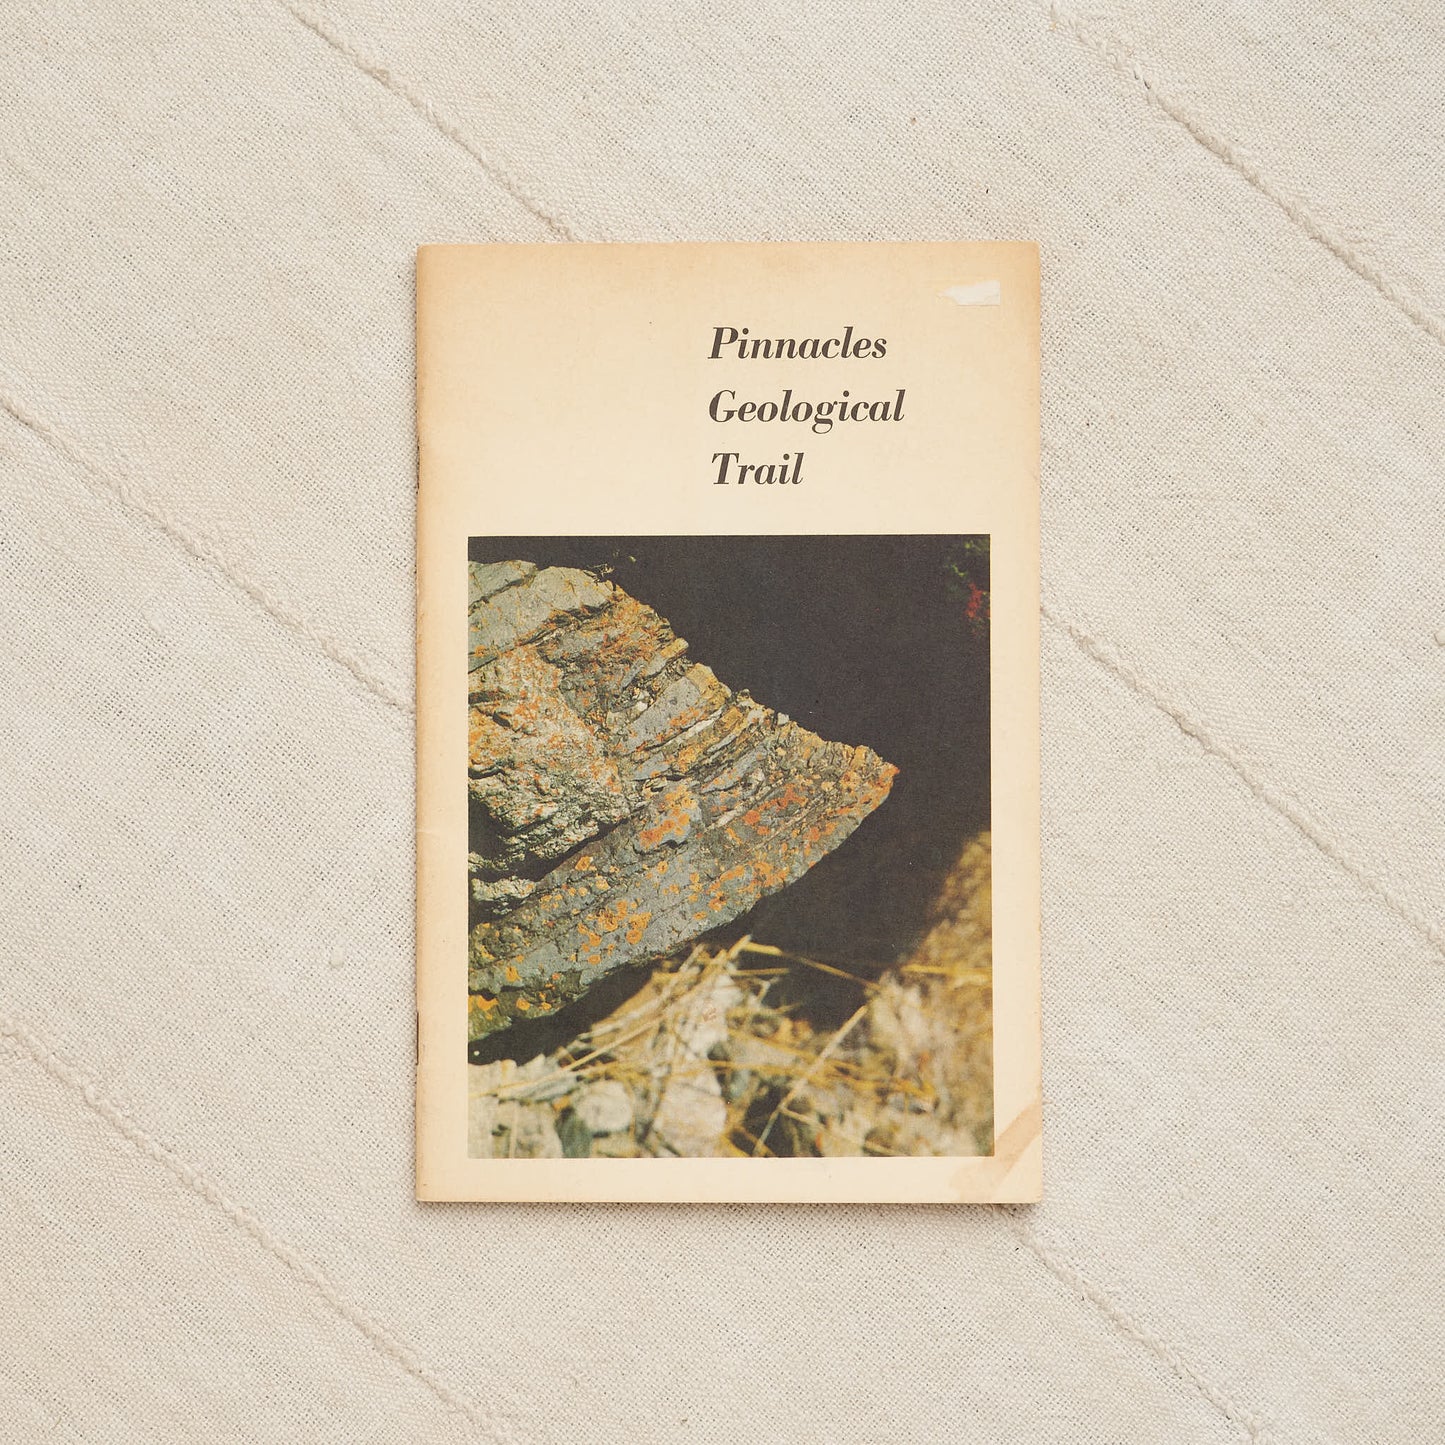 Pinnacles Geological Trail